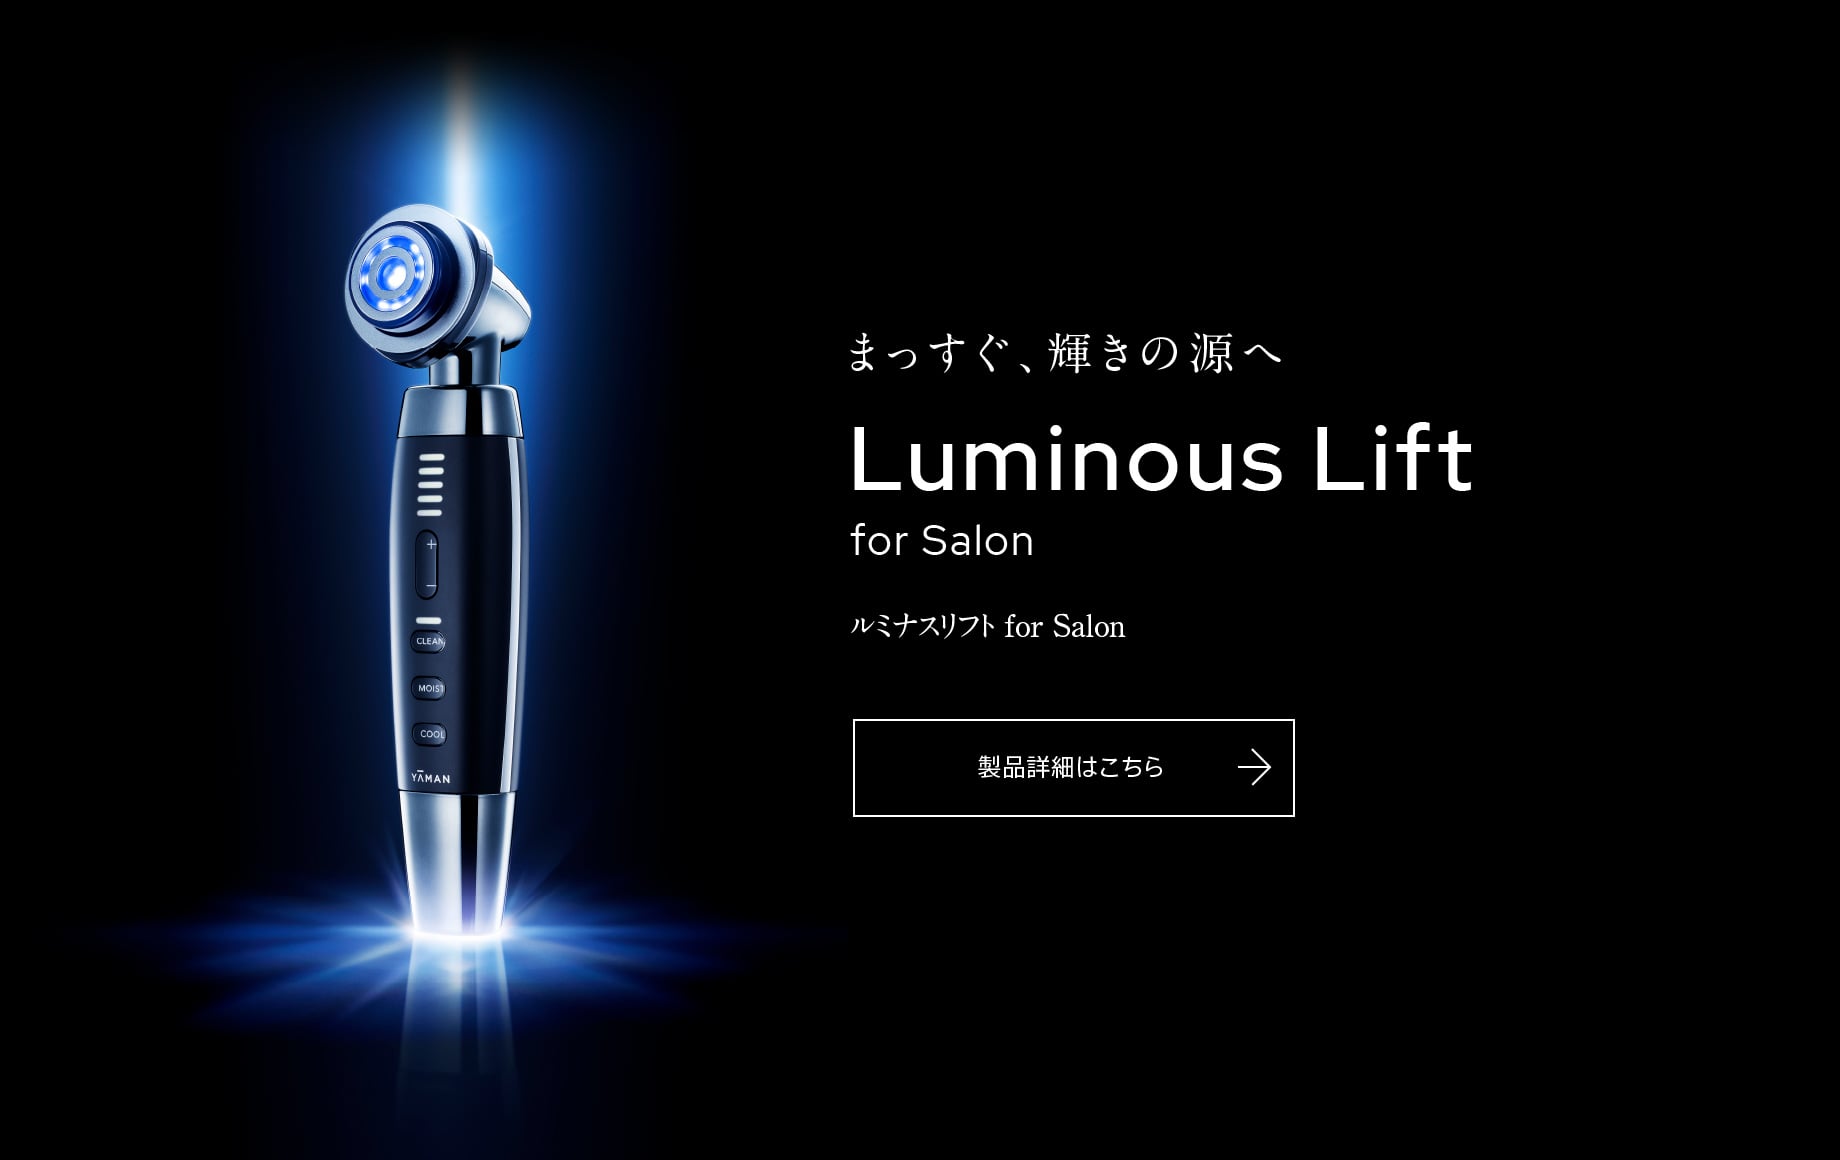 Luminous Lift for Salon